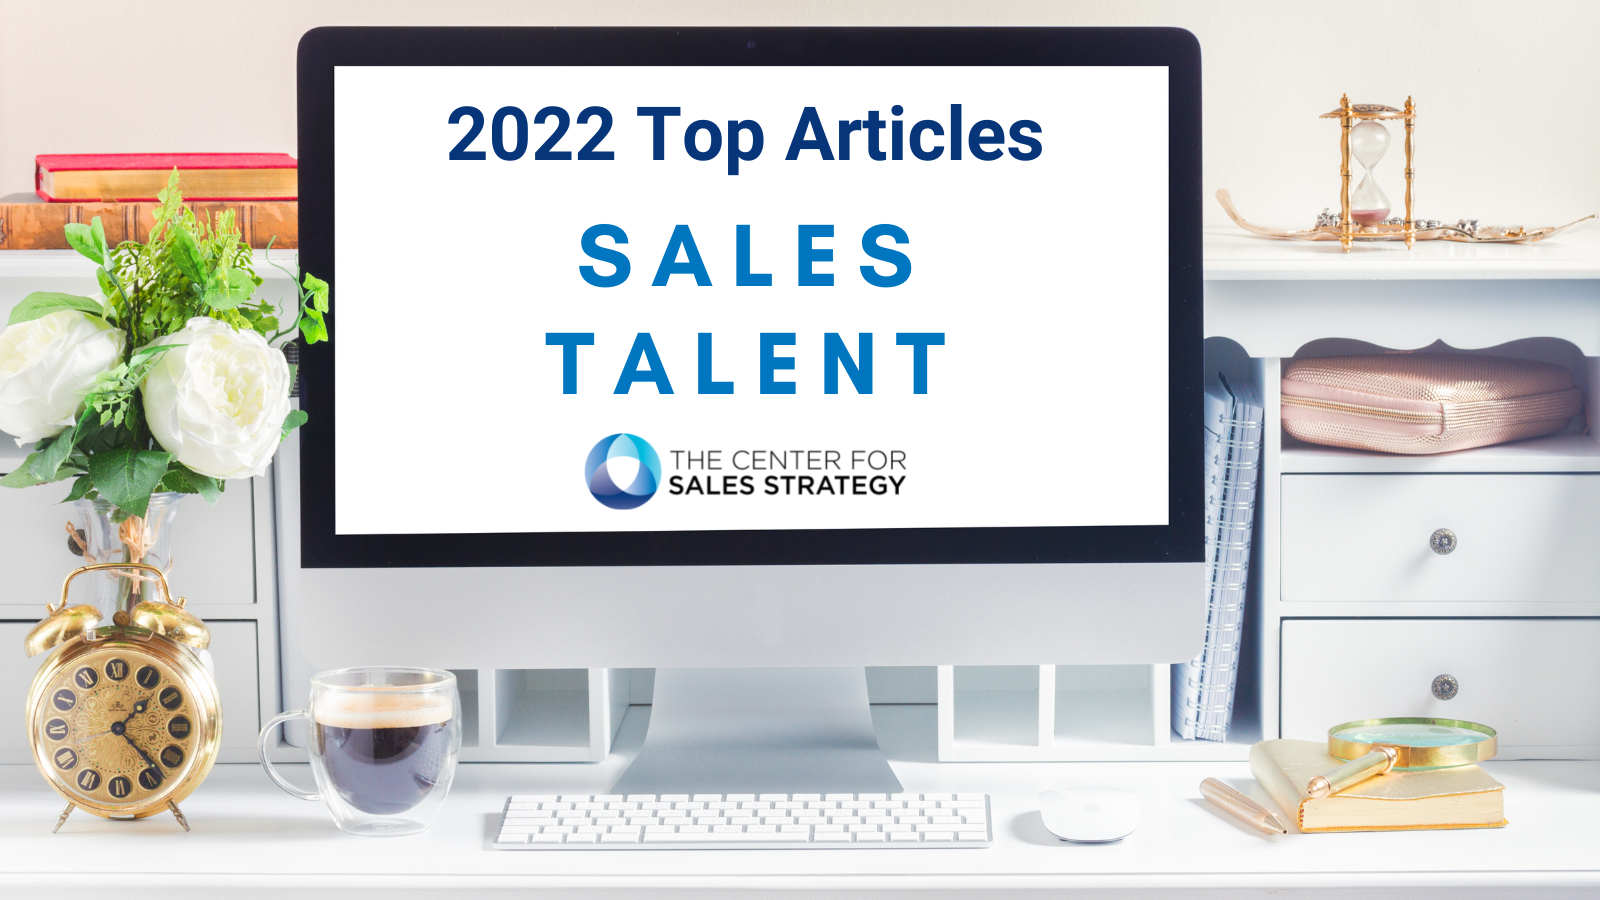 Top 2022 Articles Sales Talent